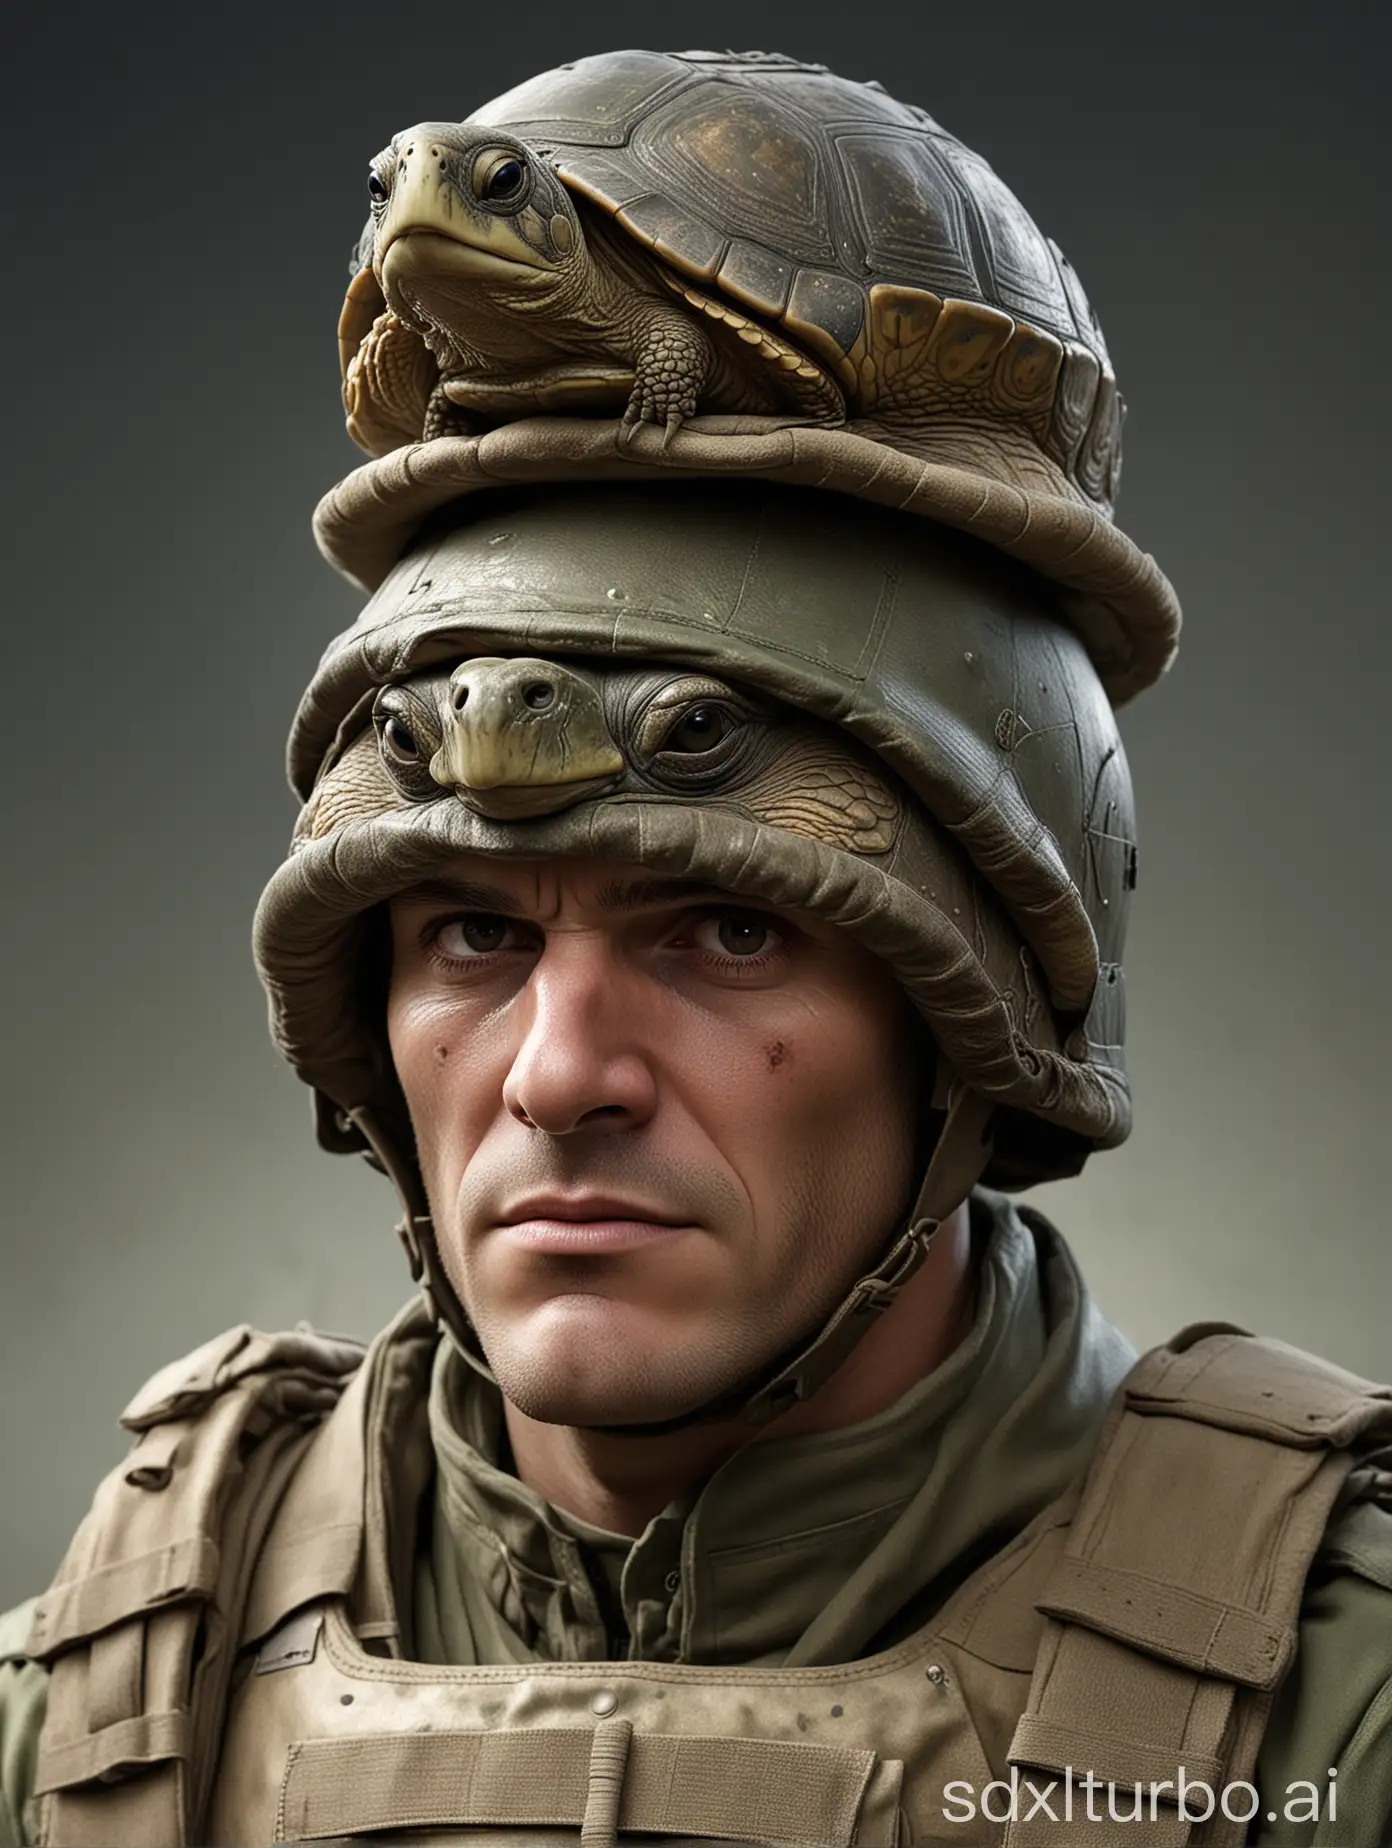 British-Soldier-Wearing-Turtle-Helmet-in-HighResolution-Realistic-Rendering